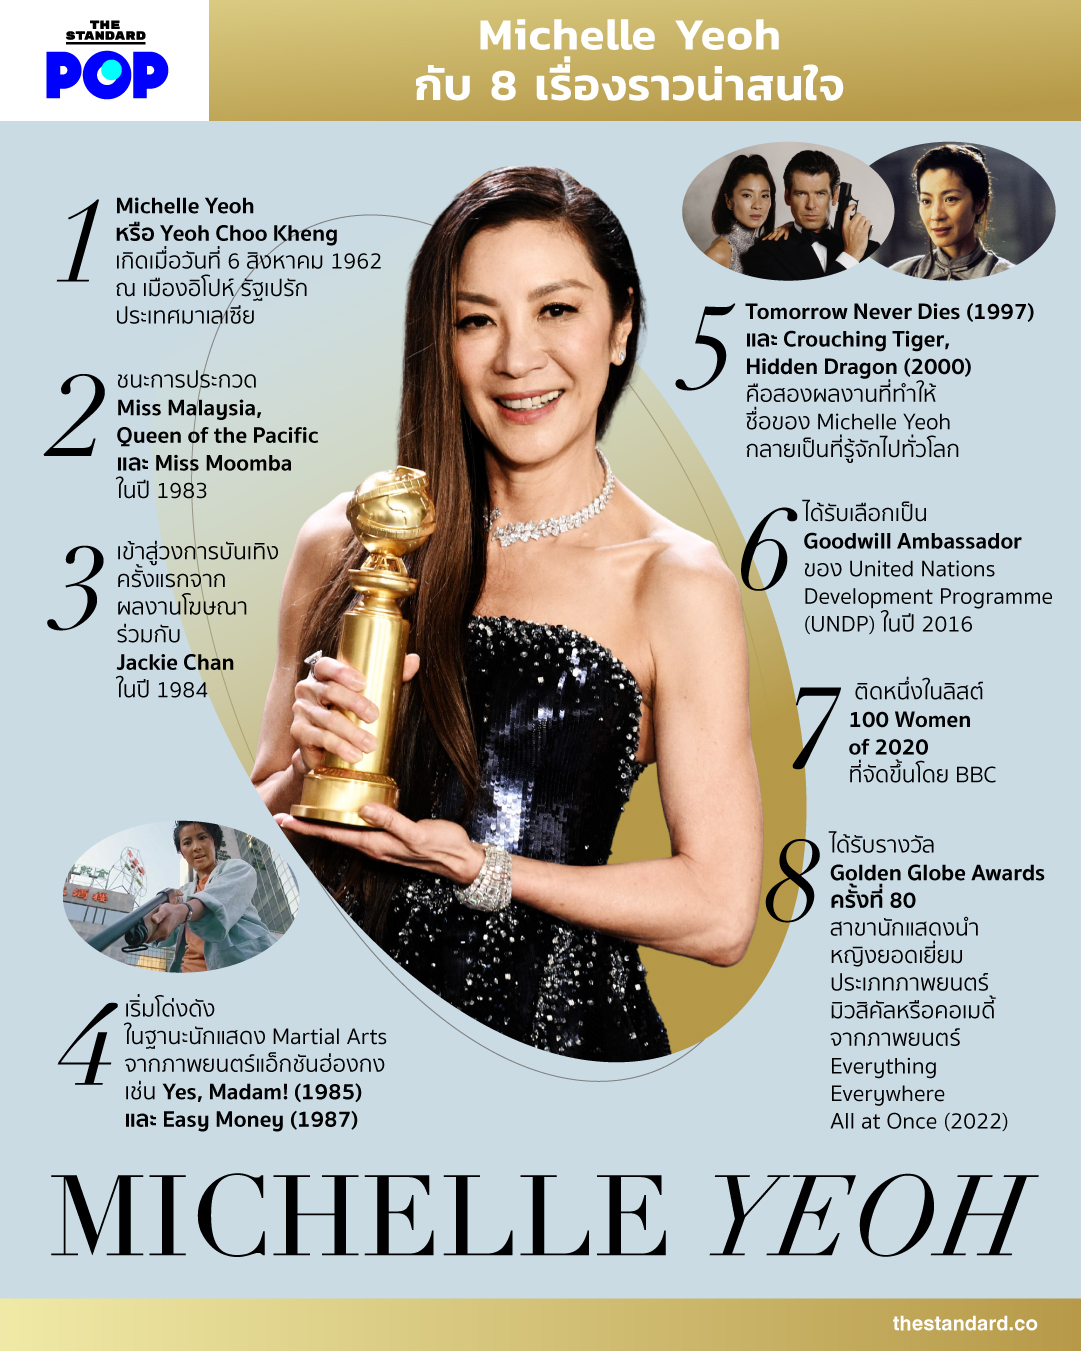 8 เรื่องราวของ Michelle Yeoh